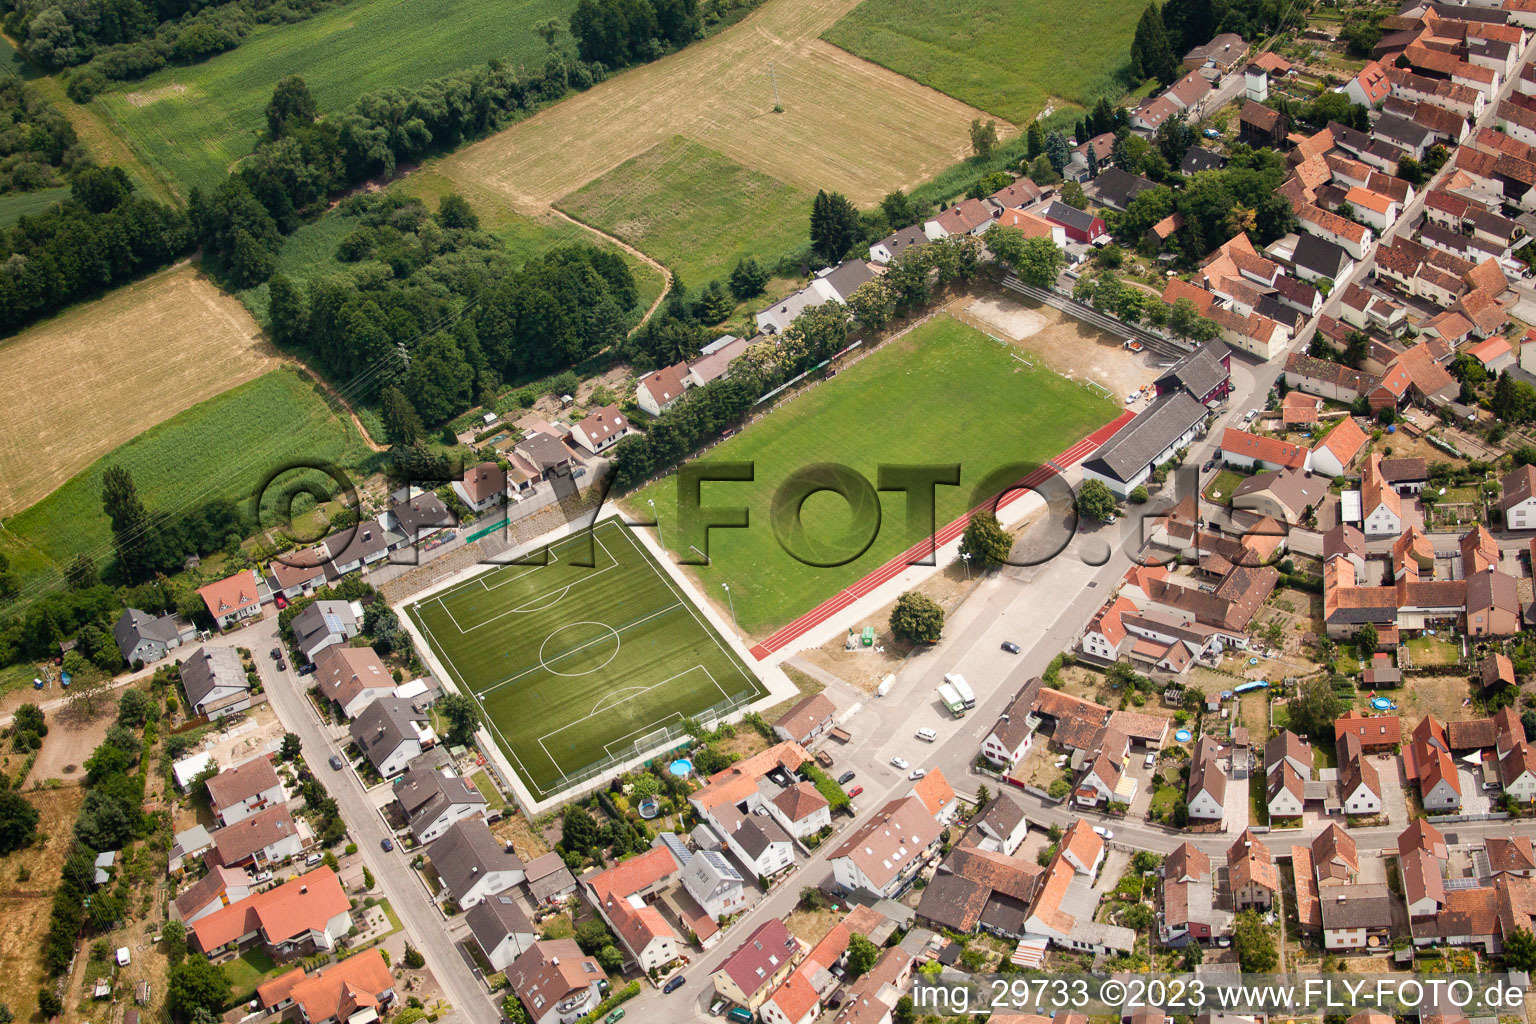 Vue aérienne de Terrain de football à Jockgrim dans le département Rhénanie-Palatinat, Allemagne